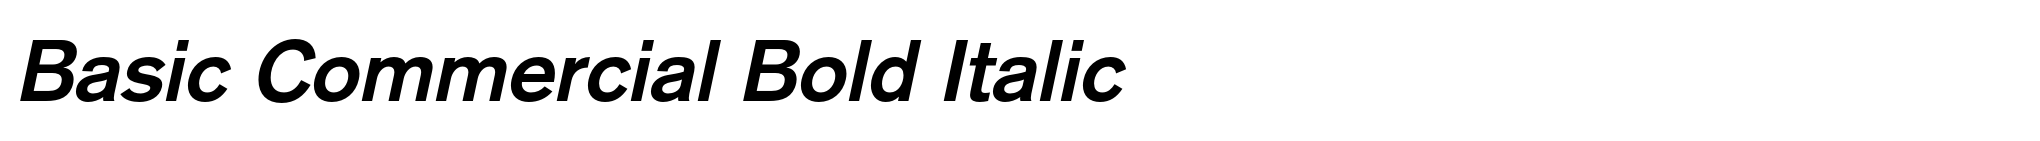 Basic Commercial Bold Italic image